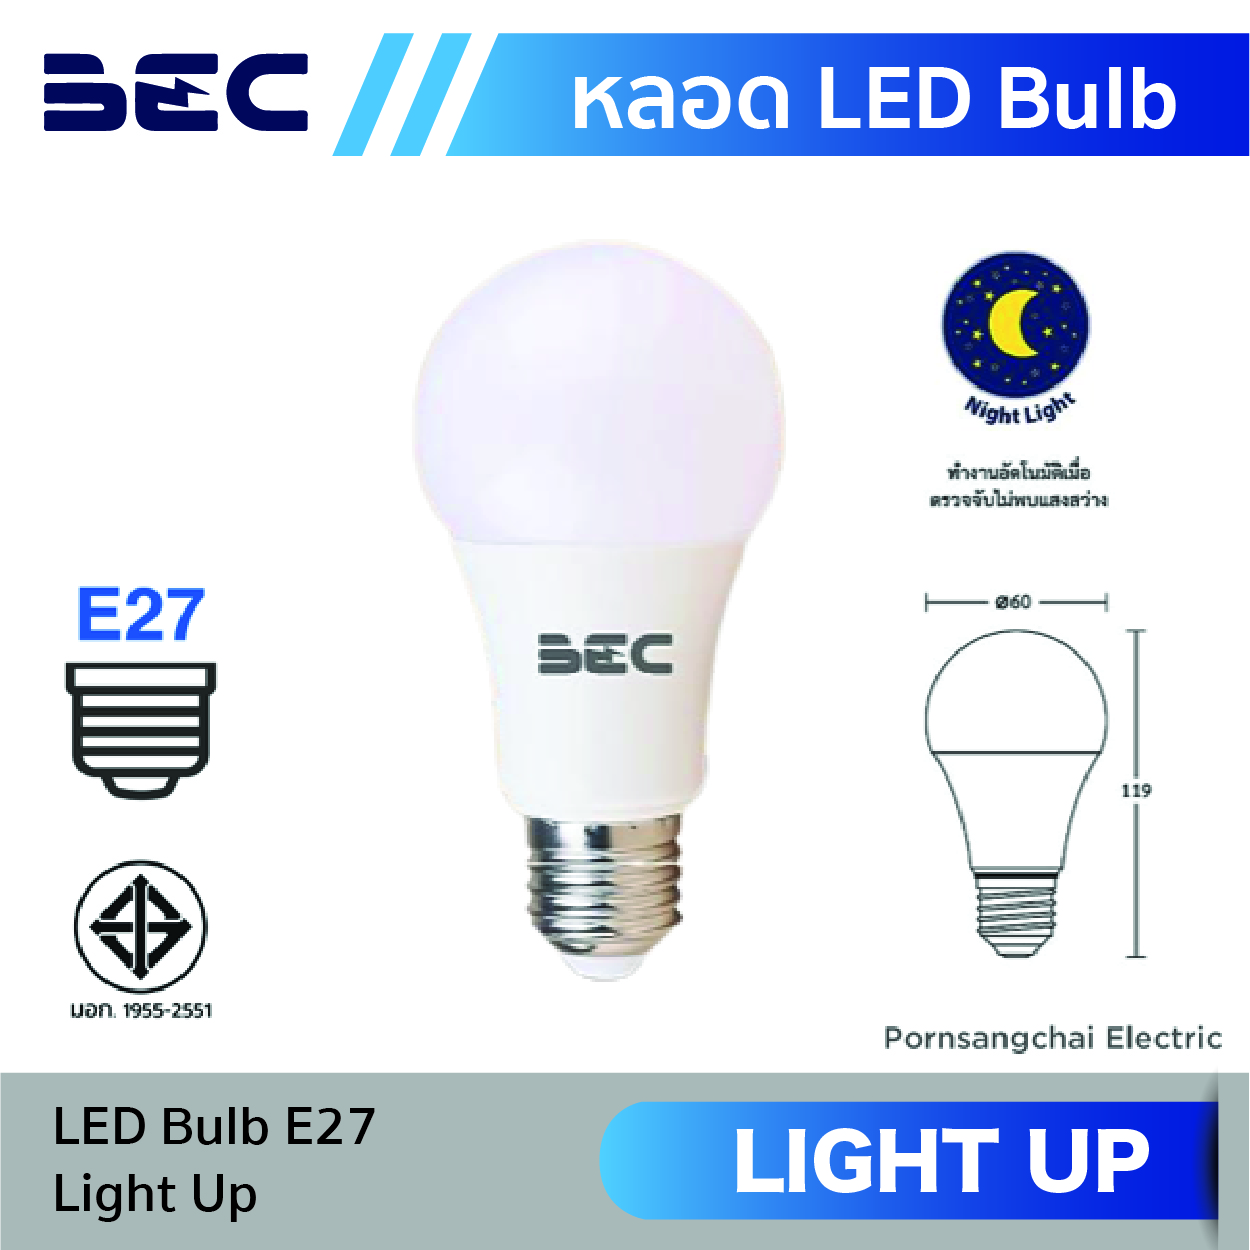 หลอดไฟ LED Bulb BEC รุ่น Light up